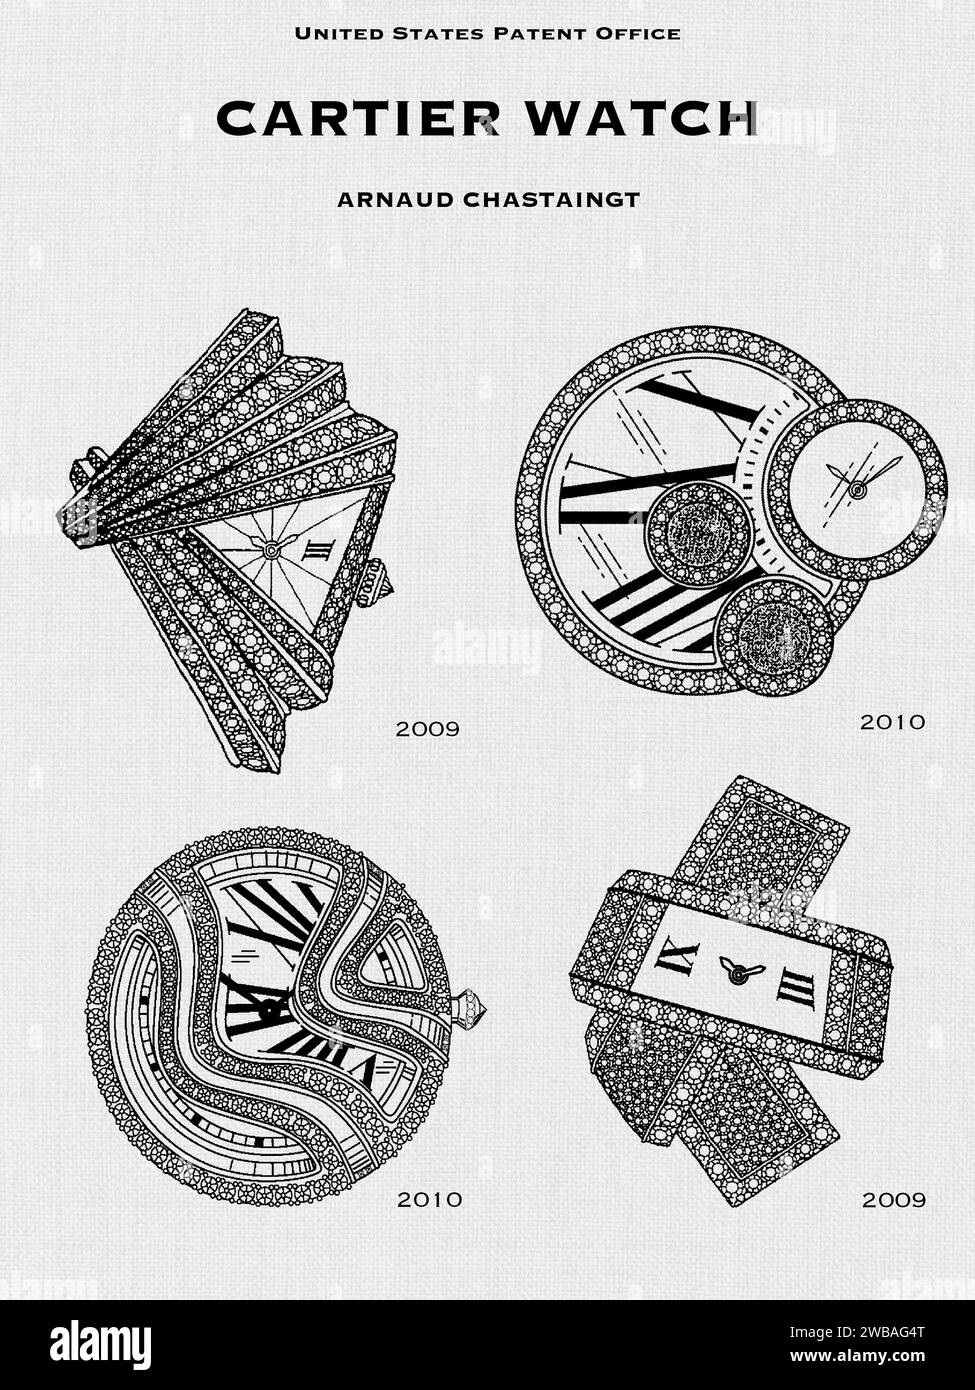 Disegni degli uffici brevetti STATUNITENSI per gli orologi Cartier di Arnaud Chastaingt su sfondo di lino bianco Foto Stock